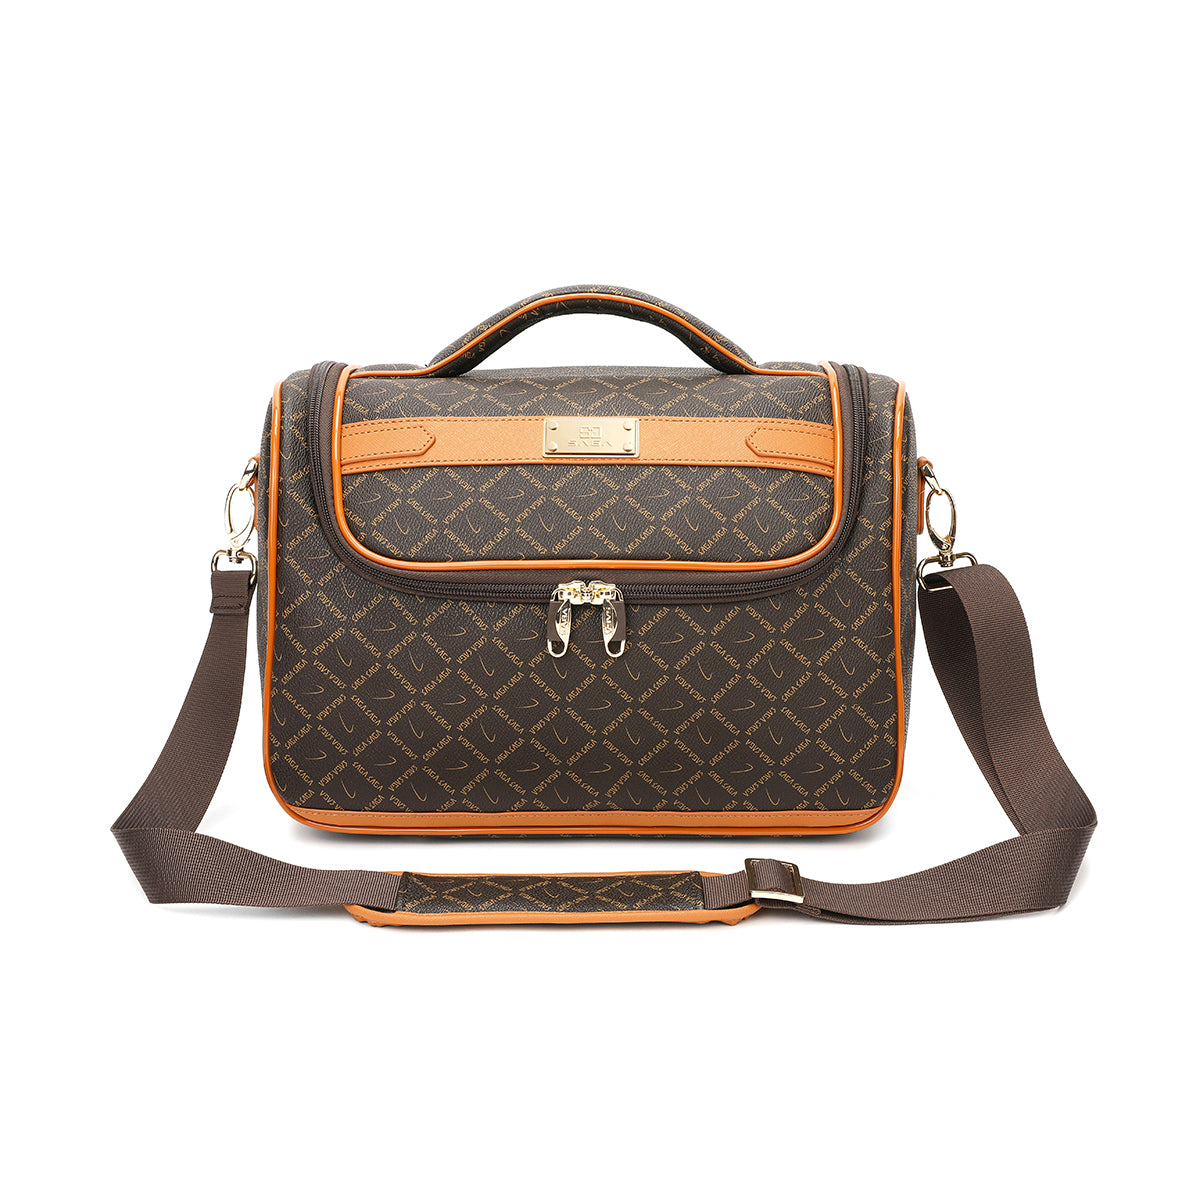 Travel bag 13 inch with shoulder strap, brown color